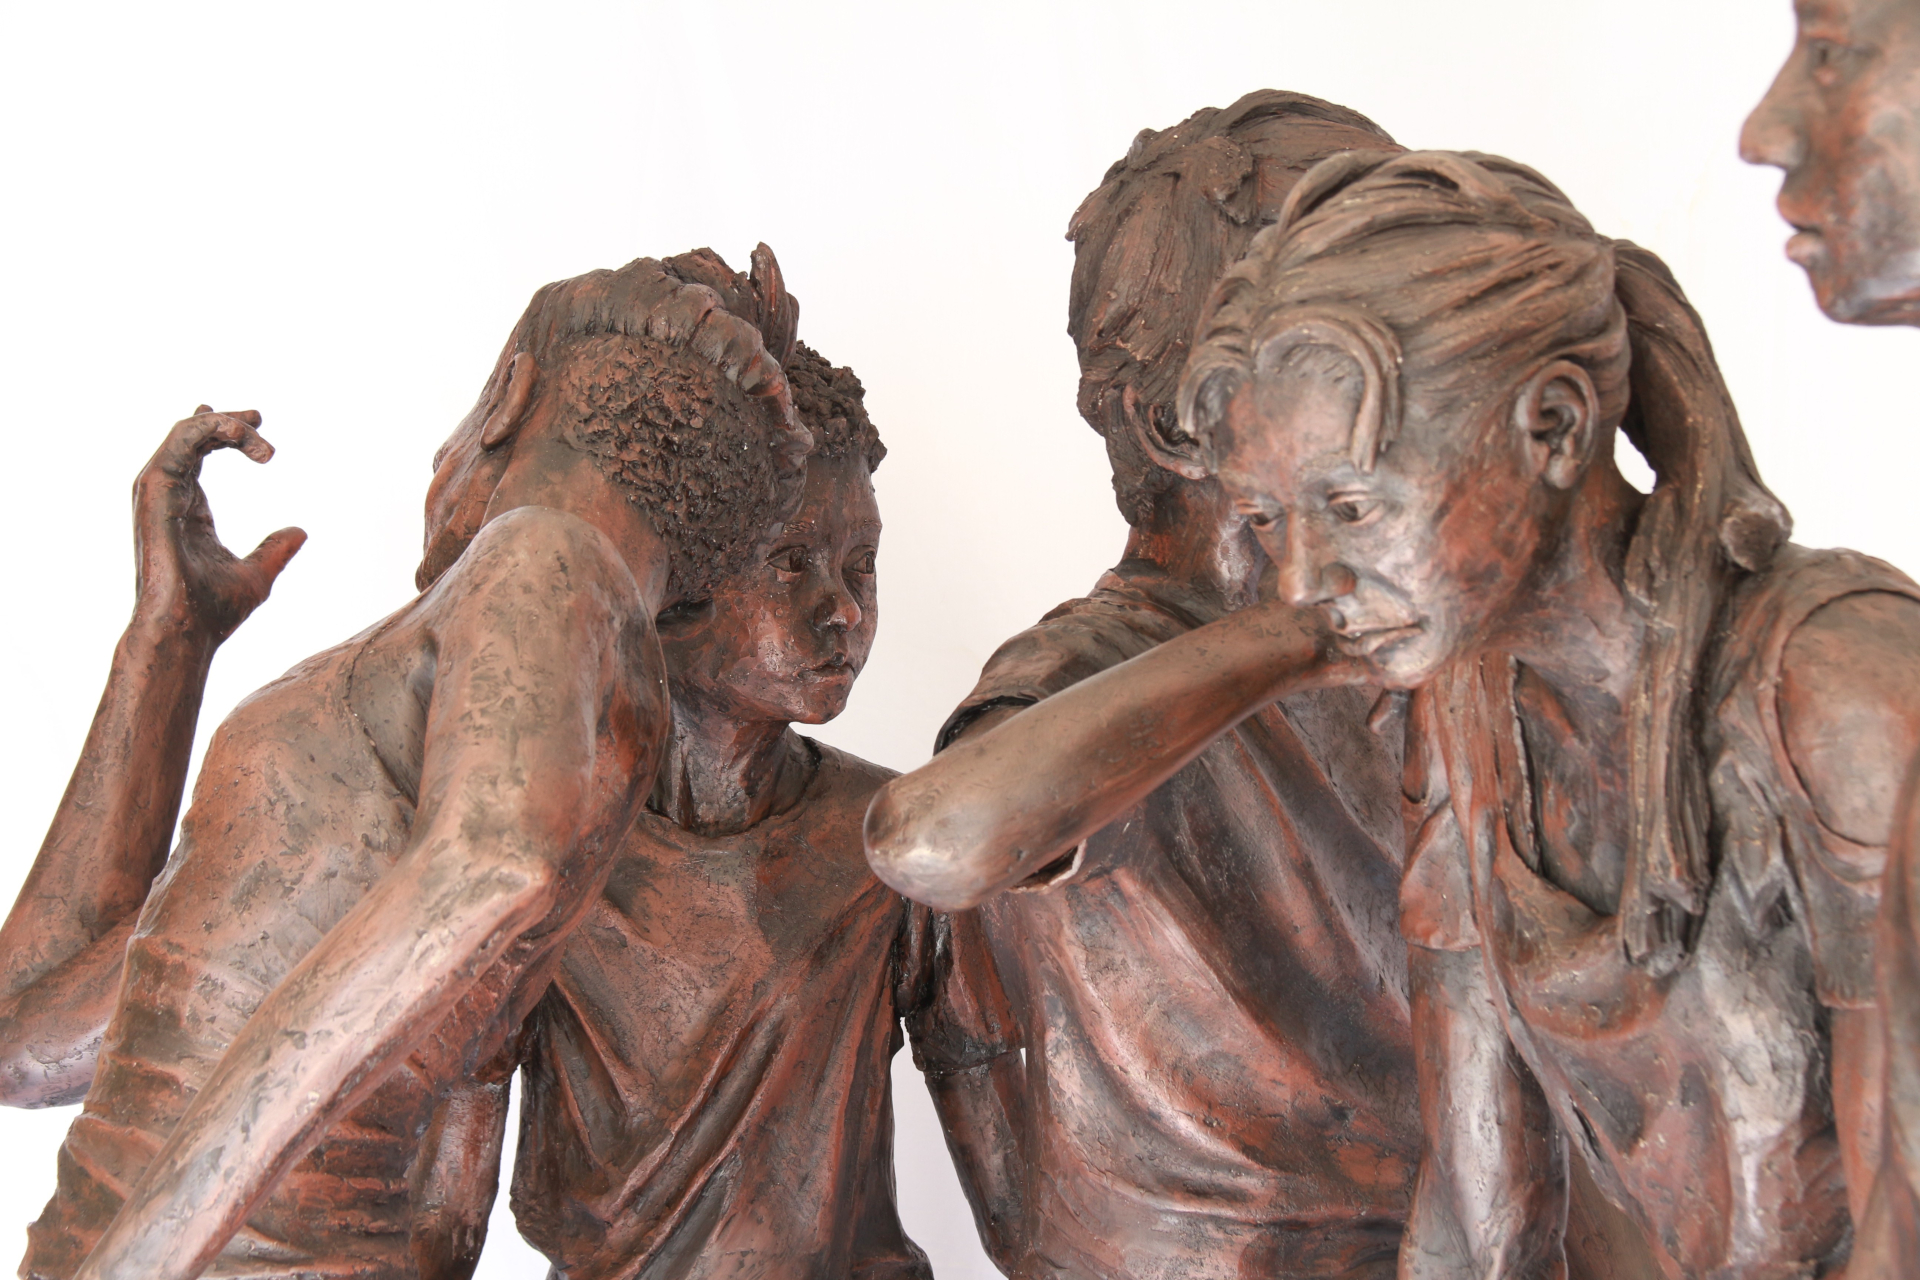 Children of Calais sculpture